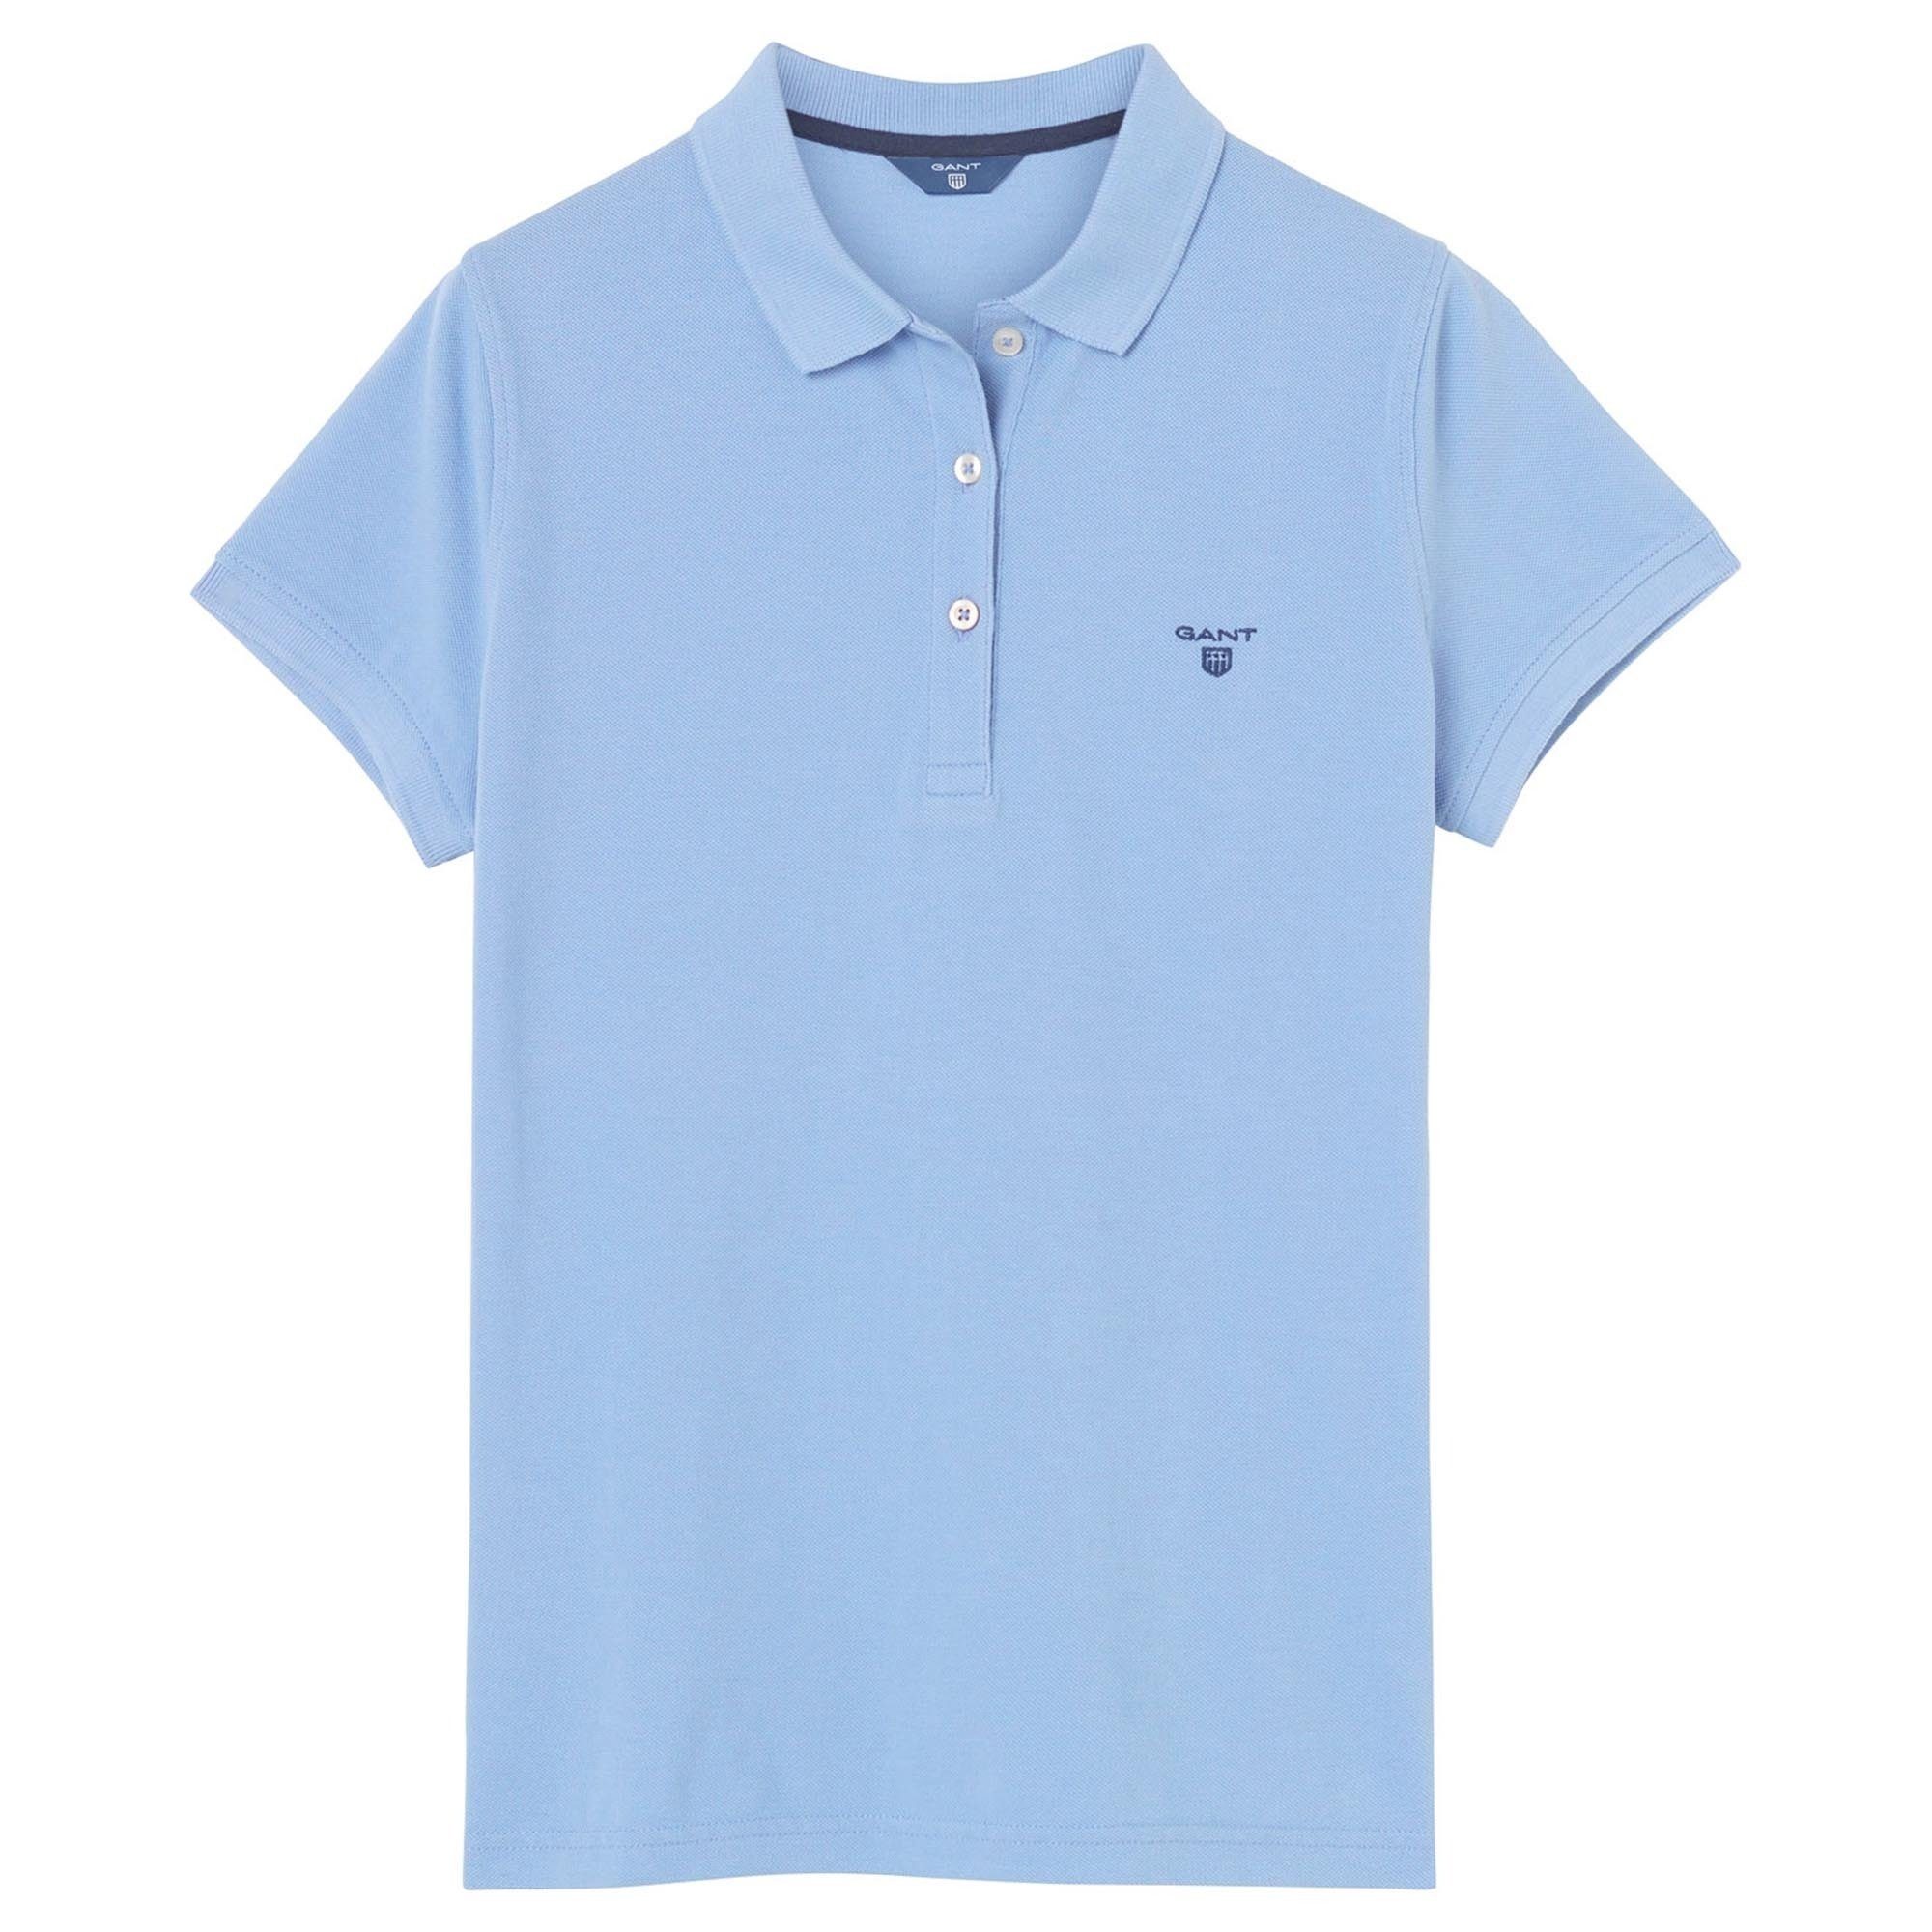 Vollendet Gant T-Shirt Damen Poloshirt Blau MD. (Gentle Pique, Summer - Blue) Halbarm